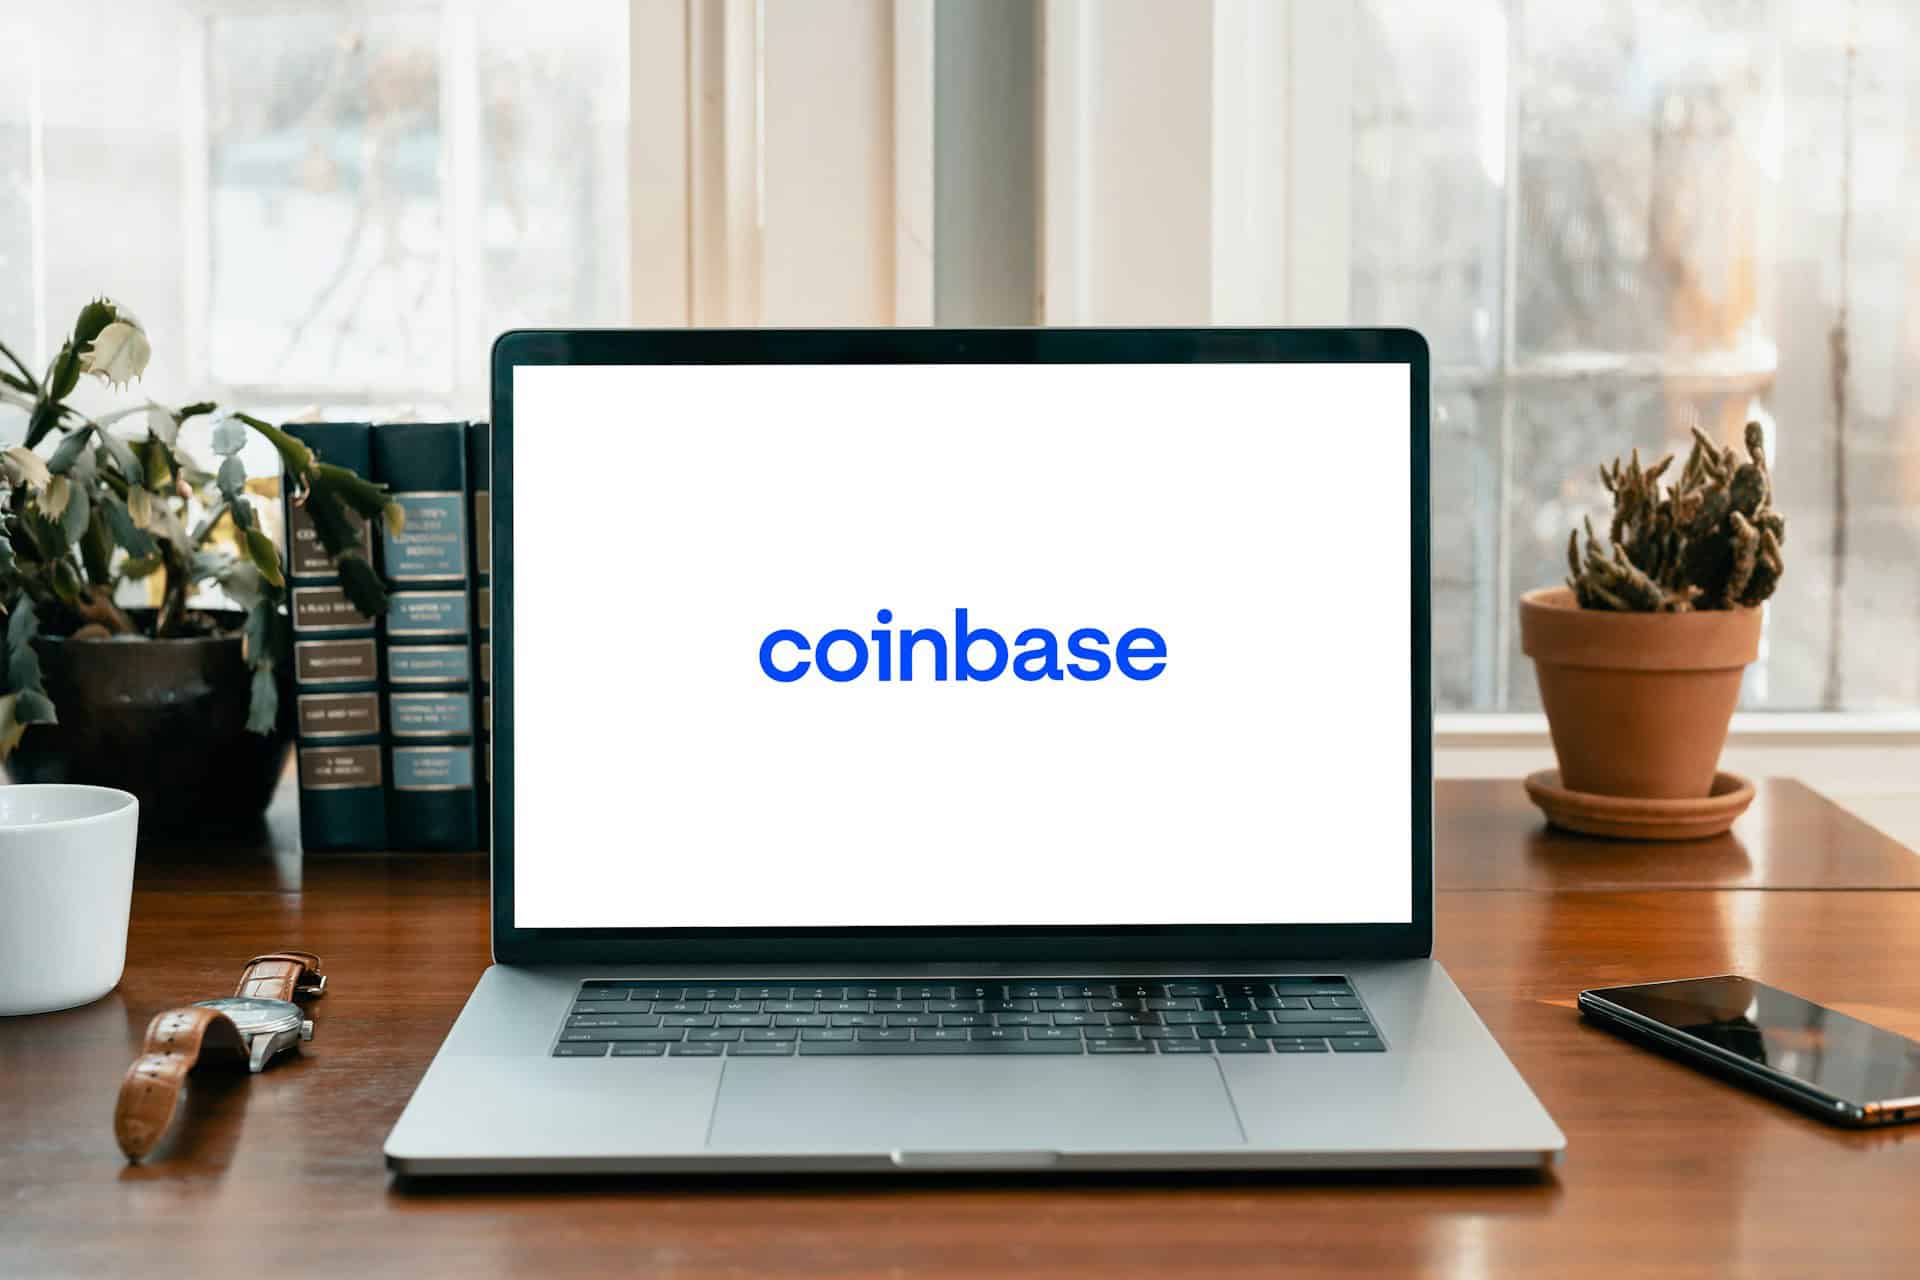 coinbase laptop